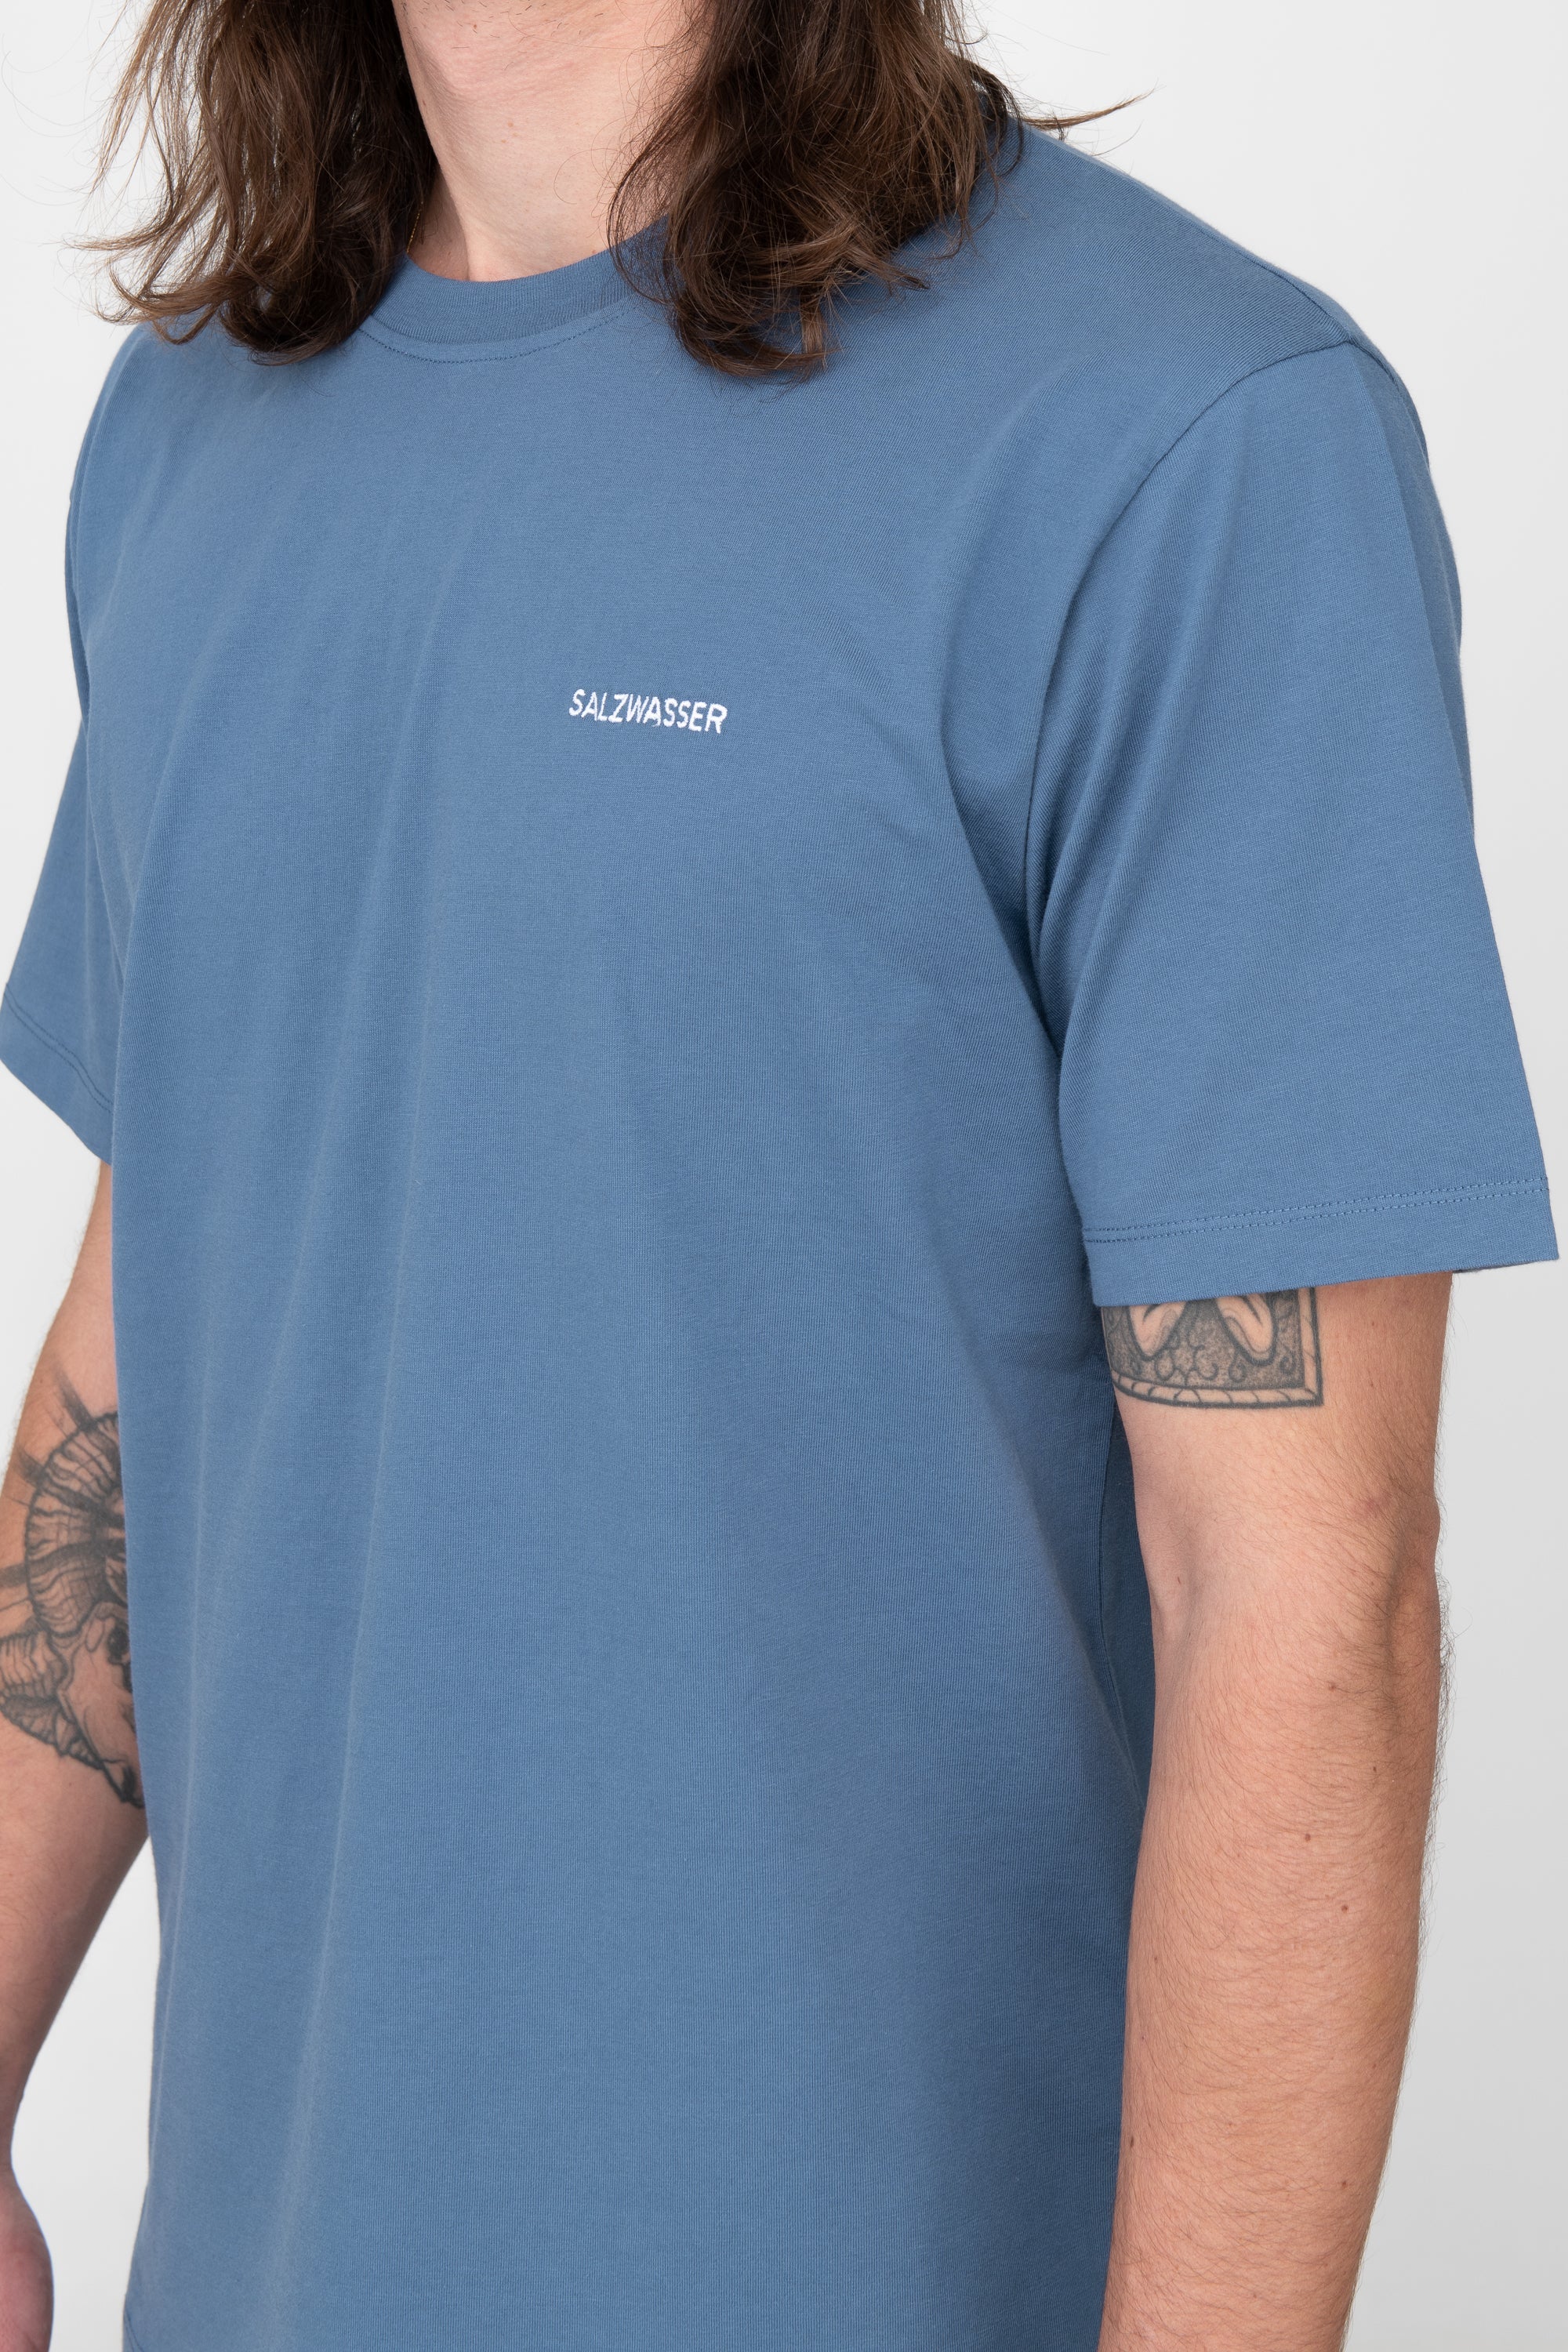 schlichtes T-Shirt in Indigo Blau mit weißer SALZWASSER-Stickerei